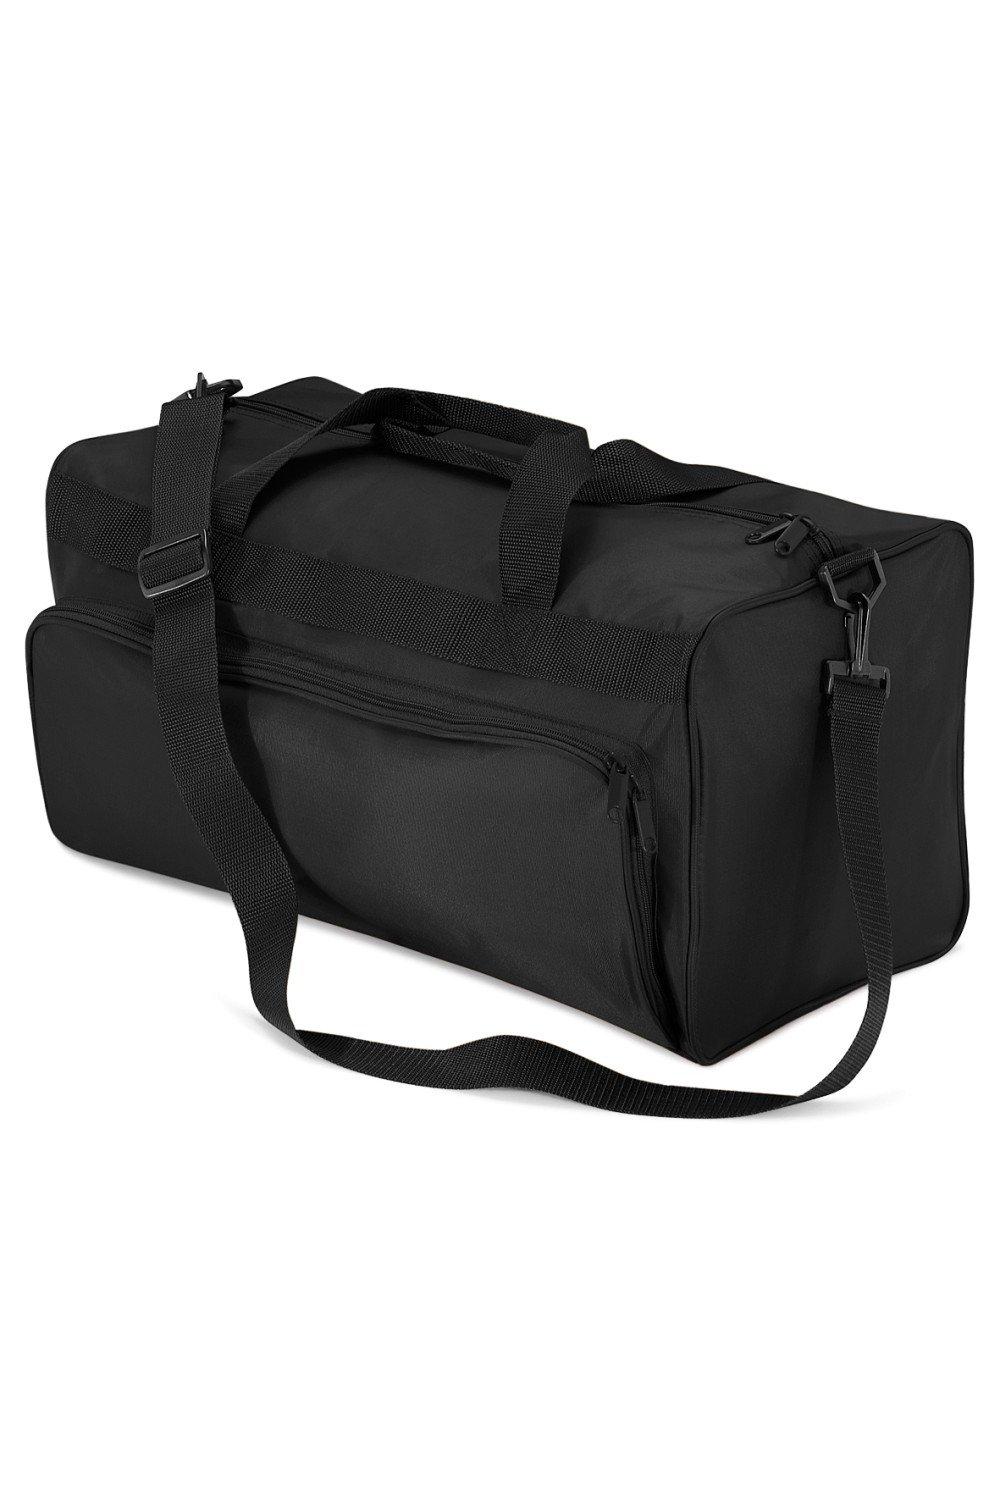 Дорожная сумка Duffle Holdall (34 литра) (2 шт.) Quadra, черный